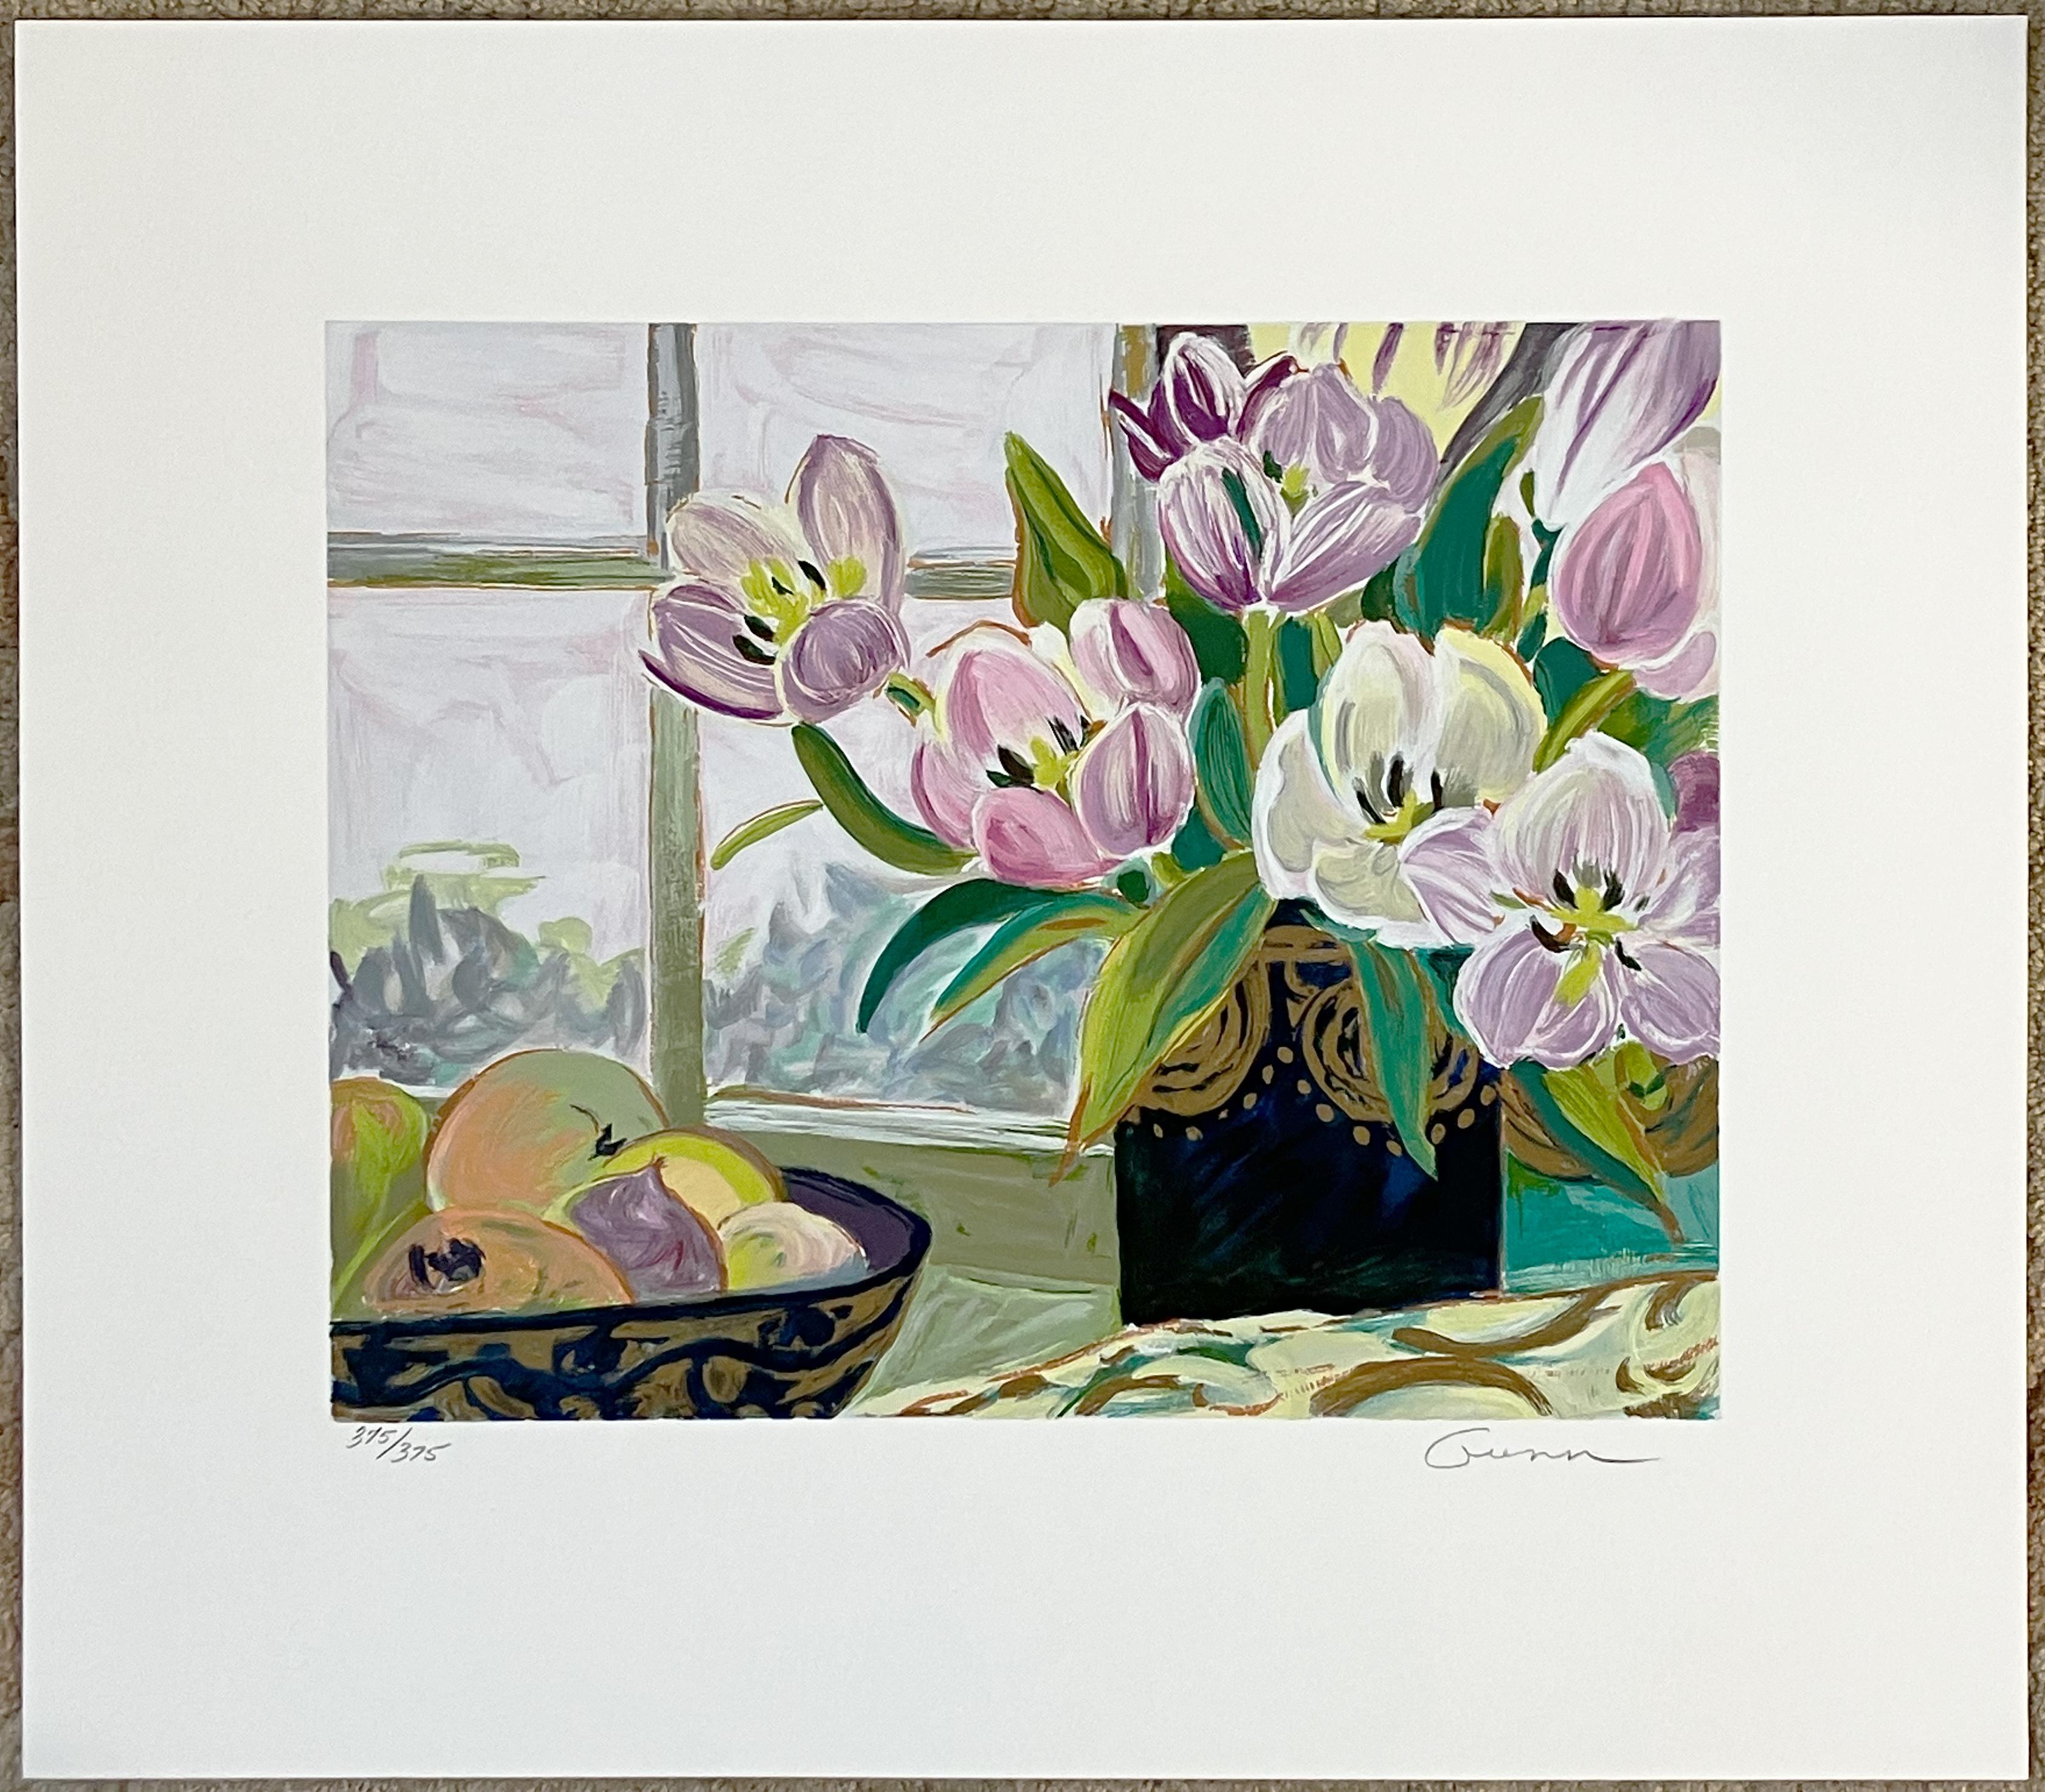 Künstlerin: Ellen Gunn (1951- )
Titel: St. Tropez Tulpen
Medium: Siebdruck 
Bildgröße: 11 x 14 Zoll
Blattgröße: 18 x 20 Zoll
Signatur: unten rechts
Auflage: 375 Diese: 375/375

Dieser schöne Druck ist ein Blumenstillleben. Es handelt sich um einen